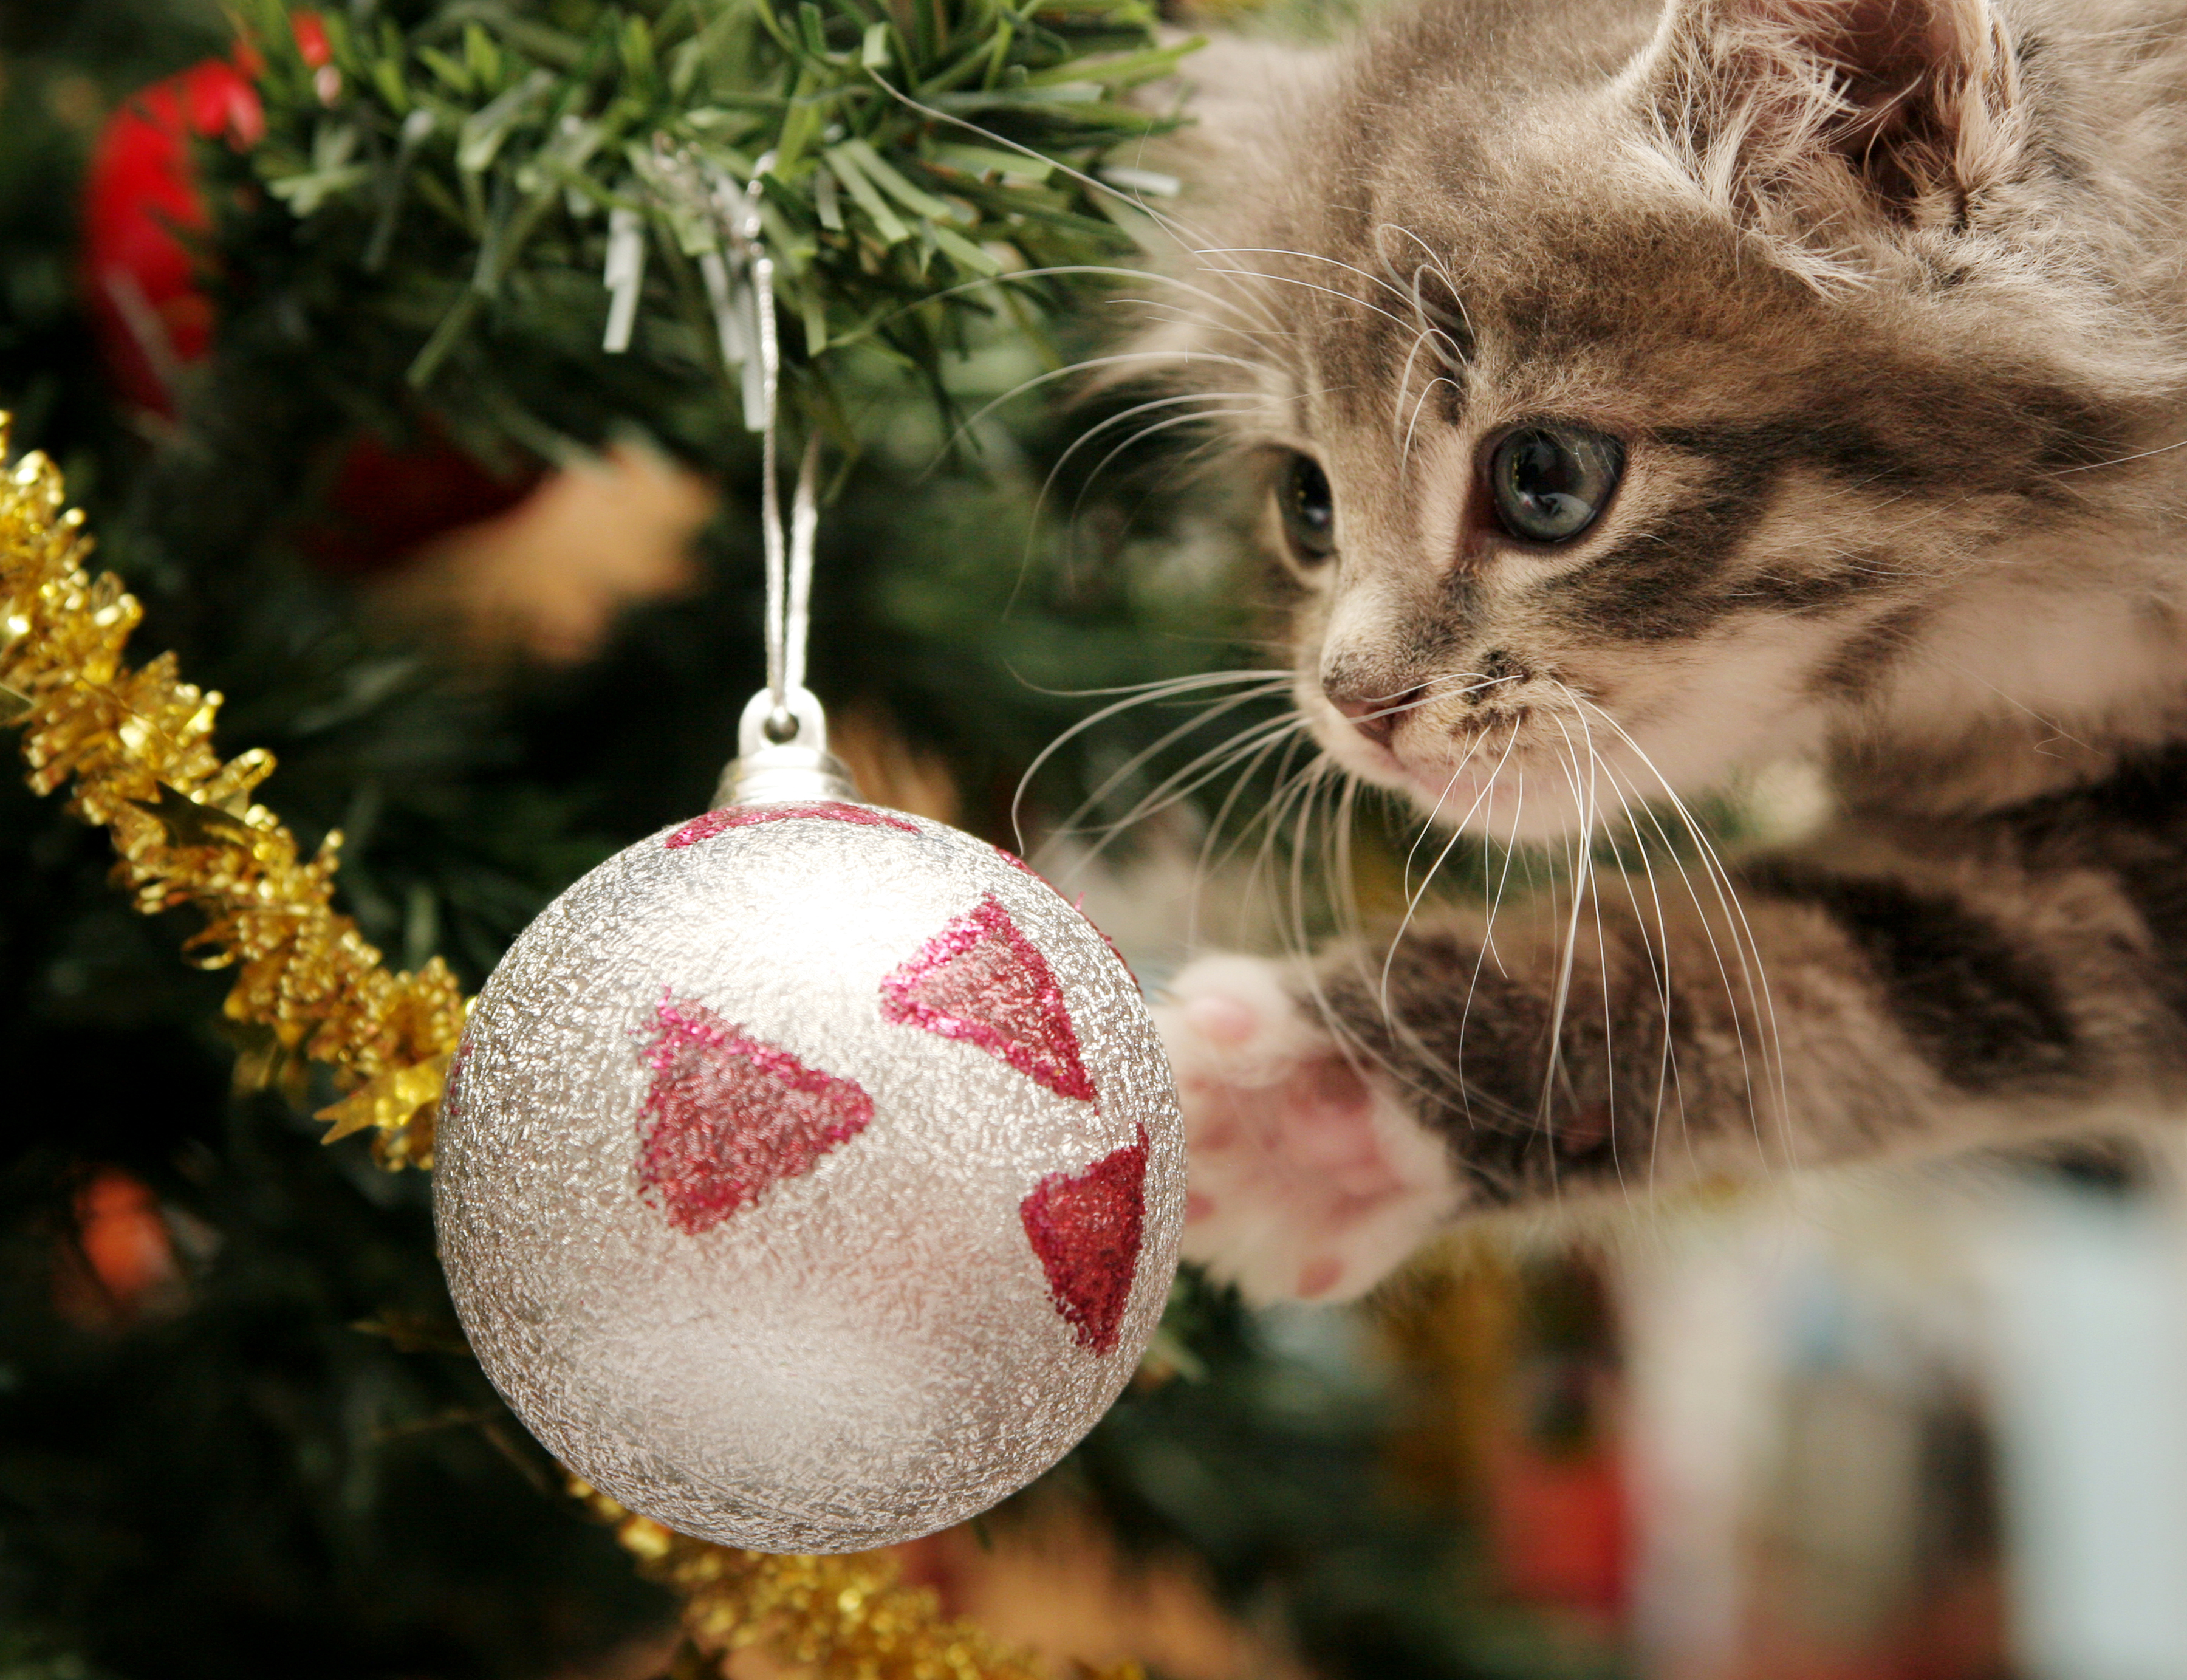 Image: Kitten, toy, ball, game, tree